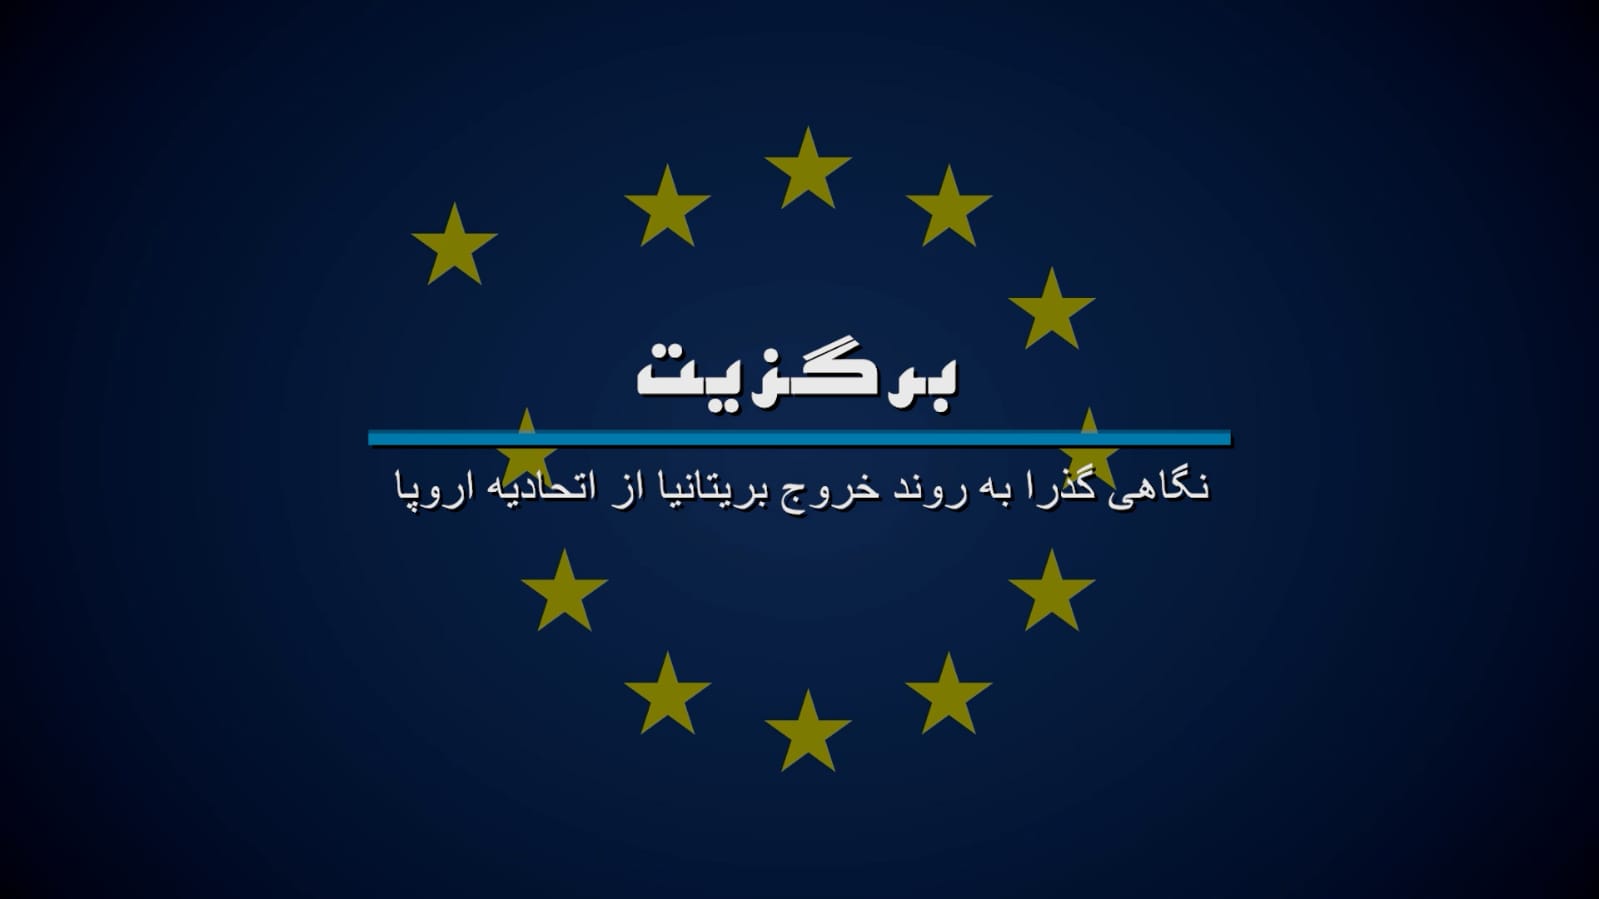 روایت خروج انگلیس از اتحادیه اروپا در مستند «برگزیت»